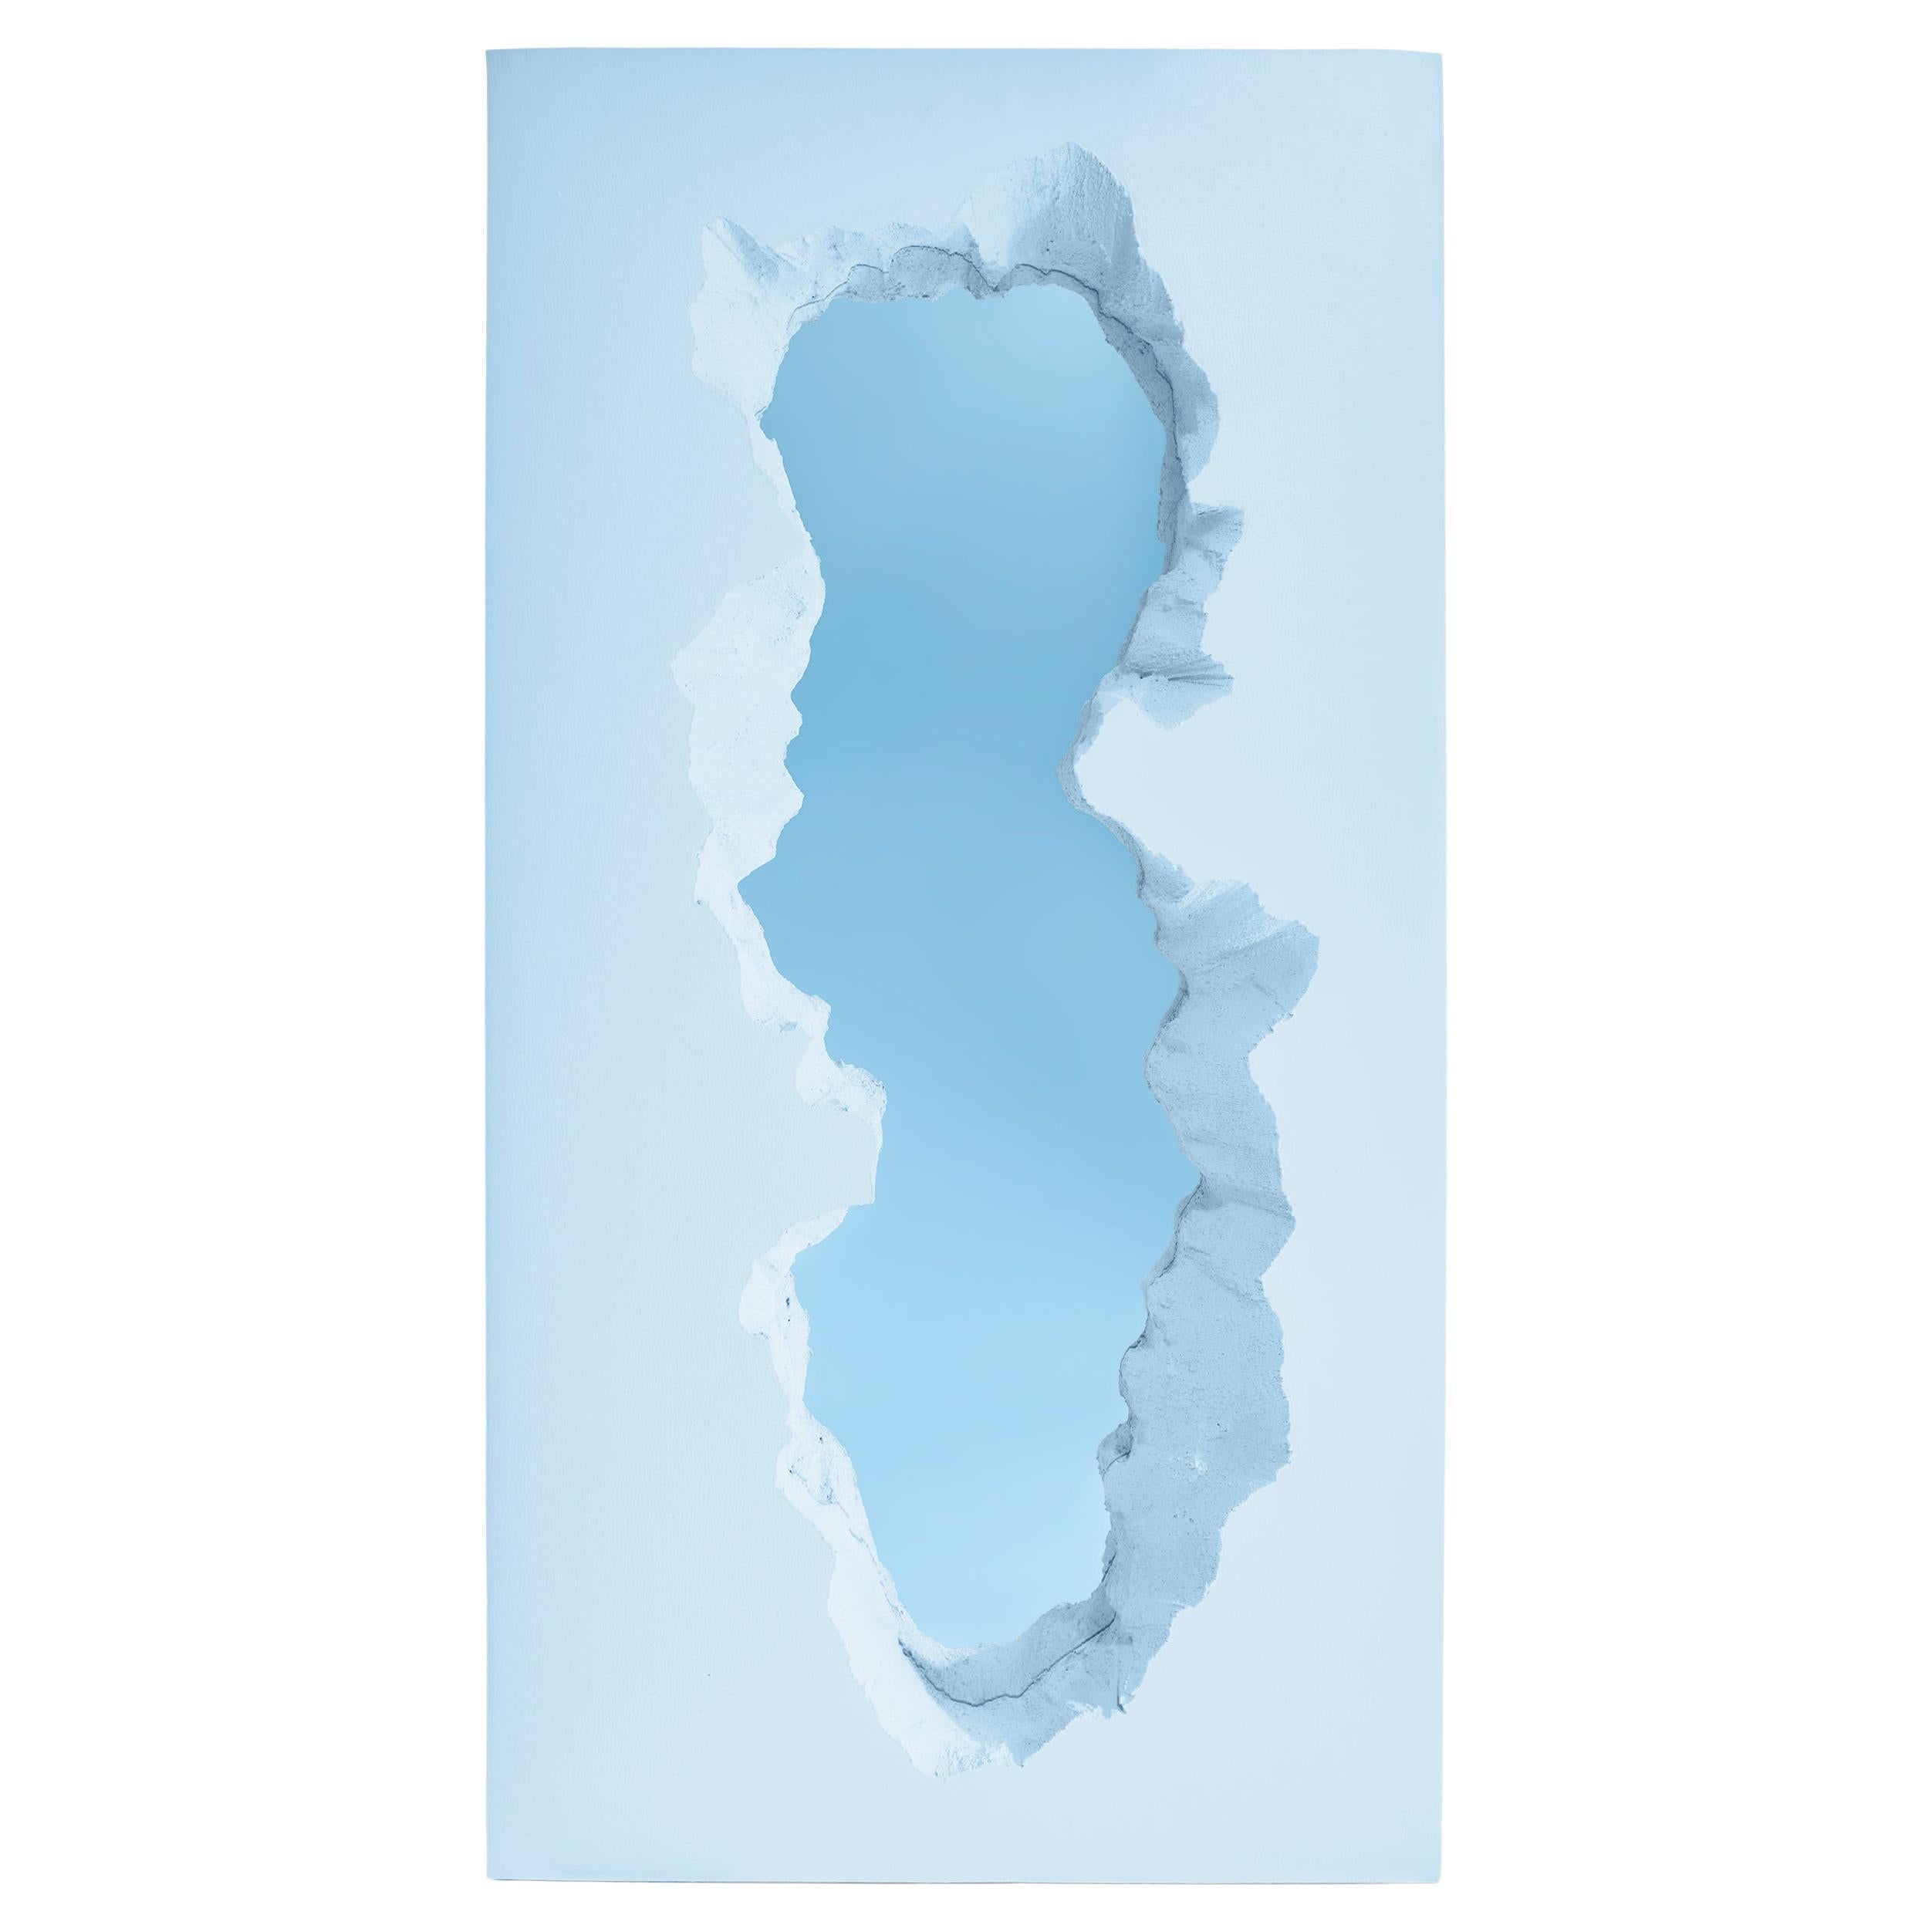 Gufram Broken Mirror by Snarkitecture - Blue edition 1/33 For Sale